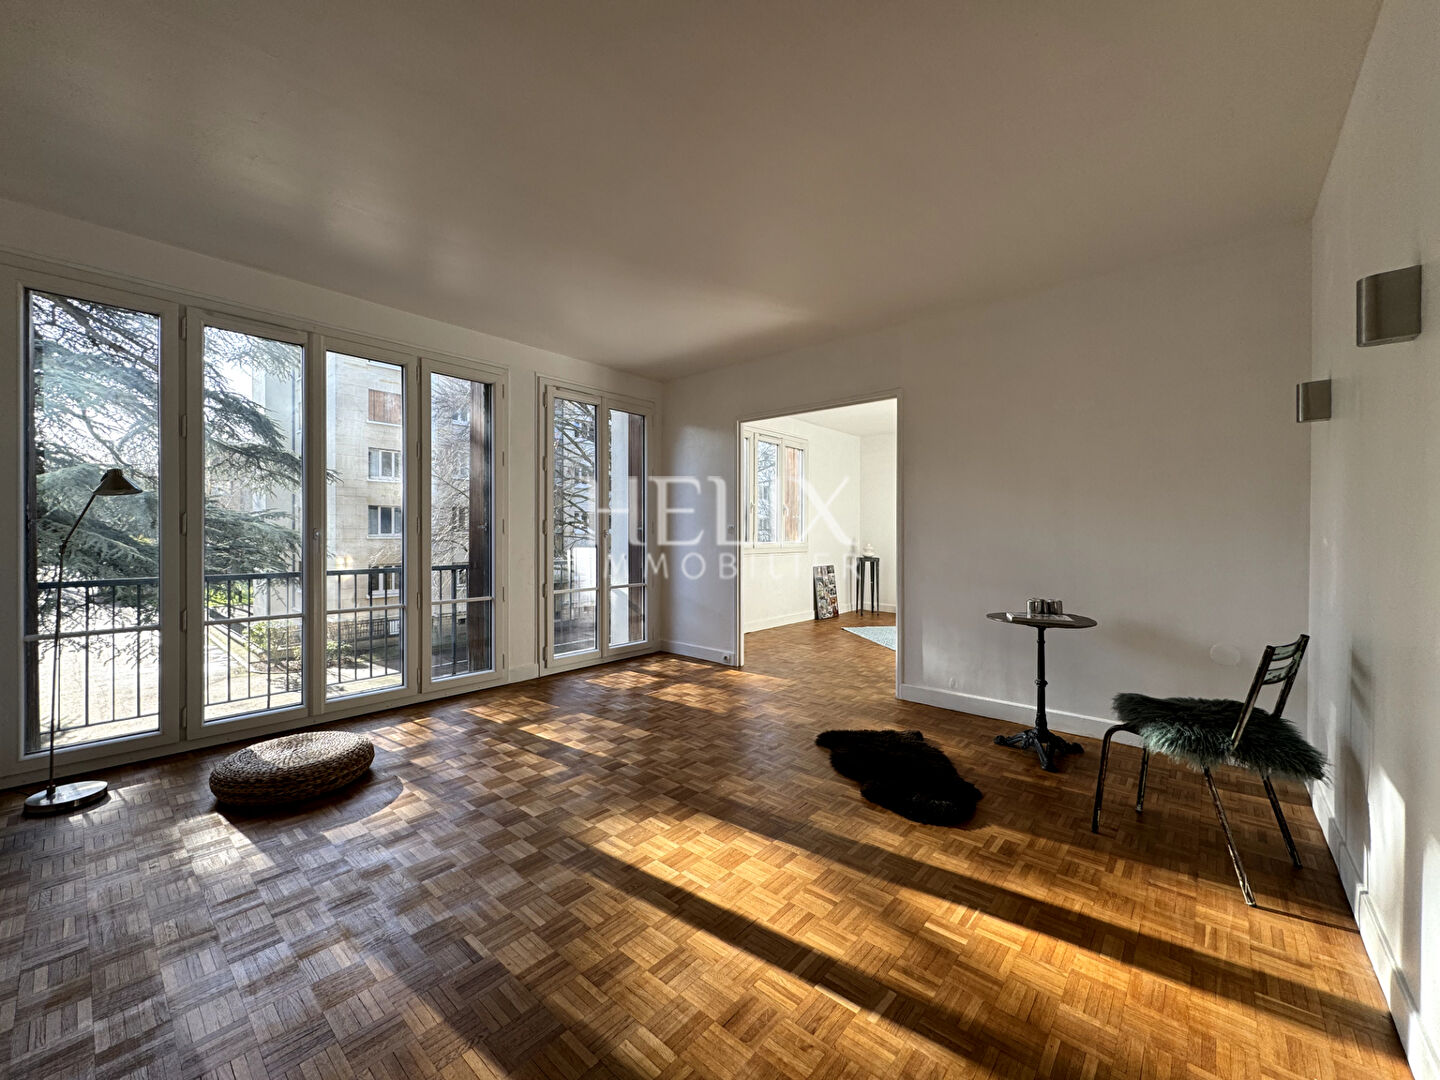 A vendre appartement avec balcon de 87,53 M² à Saint Germain en Laye, il se situe au 1er étage avec ascenseur, une triple exposition, le calme absolu, lumineux et ensoleillé.